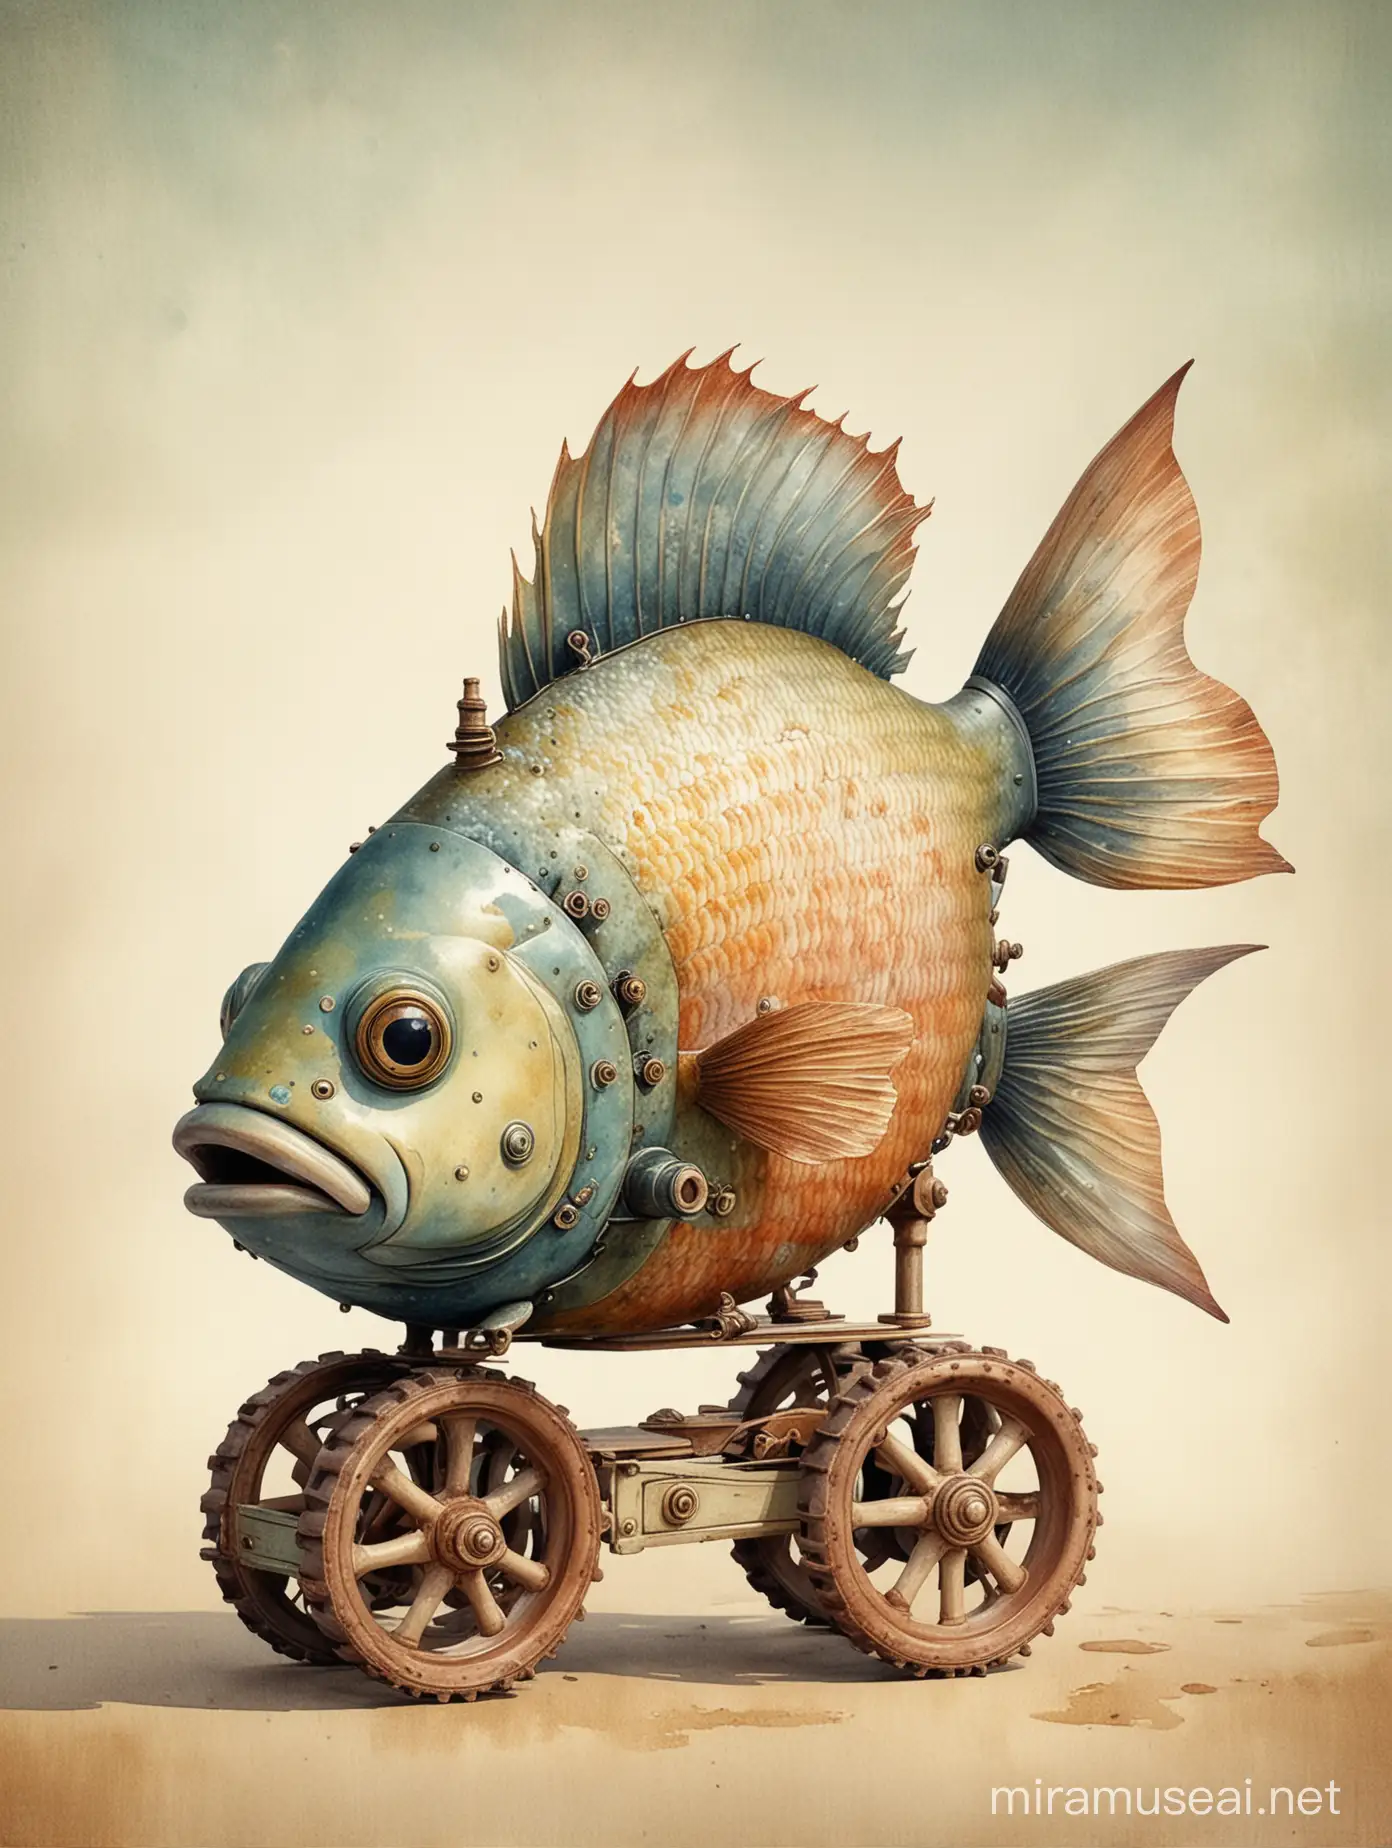 un poisson avec des roulettes, style jouet ancien, l’image respire le charme d’une époque révolue, capturant l’imagination avec son mélange unique de détails minutieux et de réminiscences vintage, style aquarelle